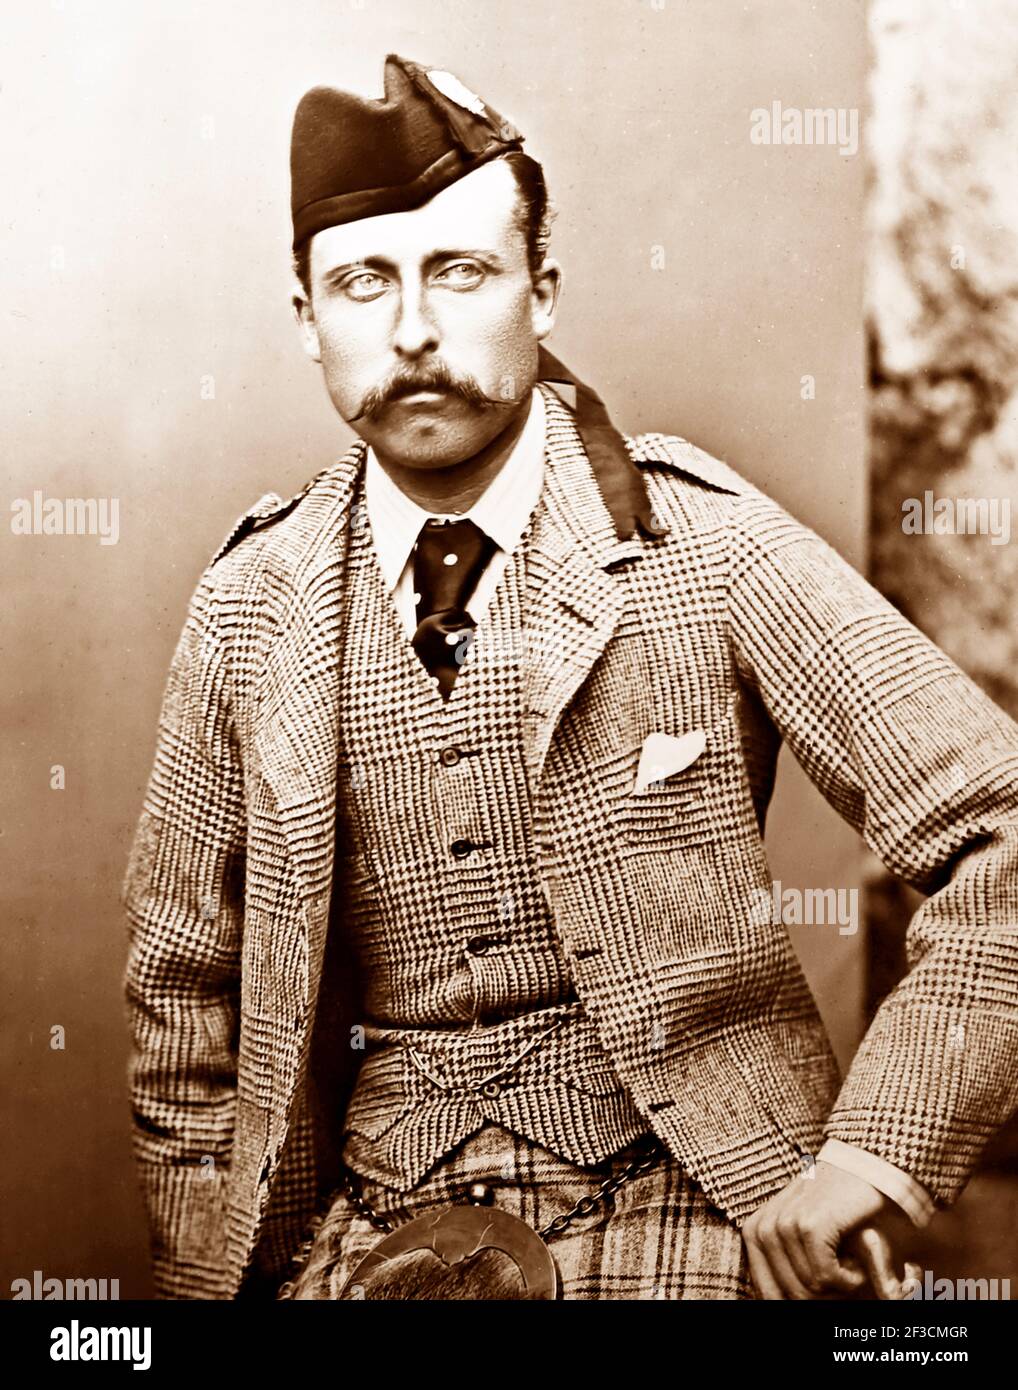 El príncipe Arturo, duque de Connaught, hijo de la reina Victoria, época victoriana Foto de stock